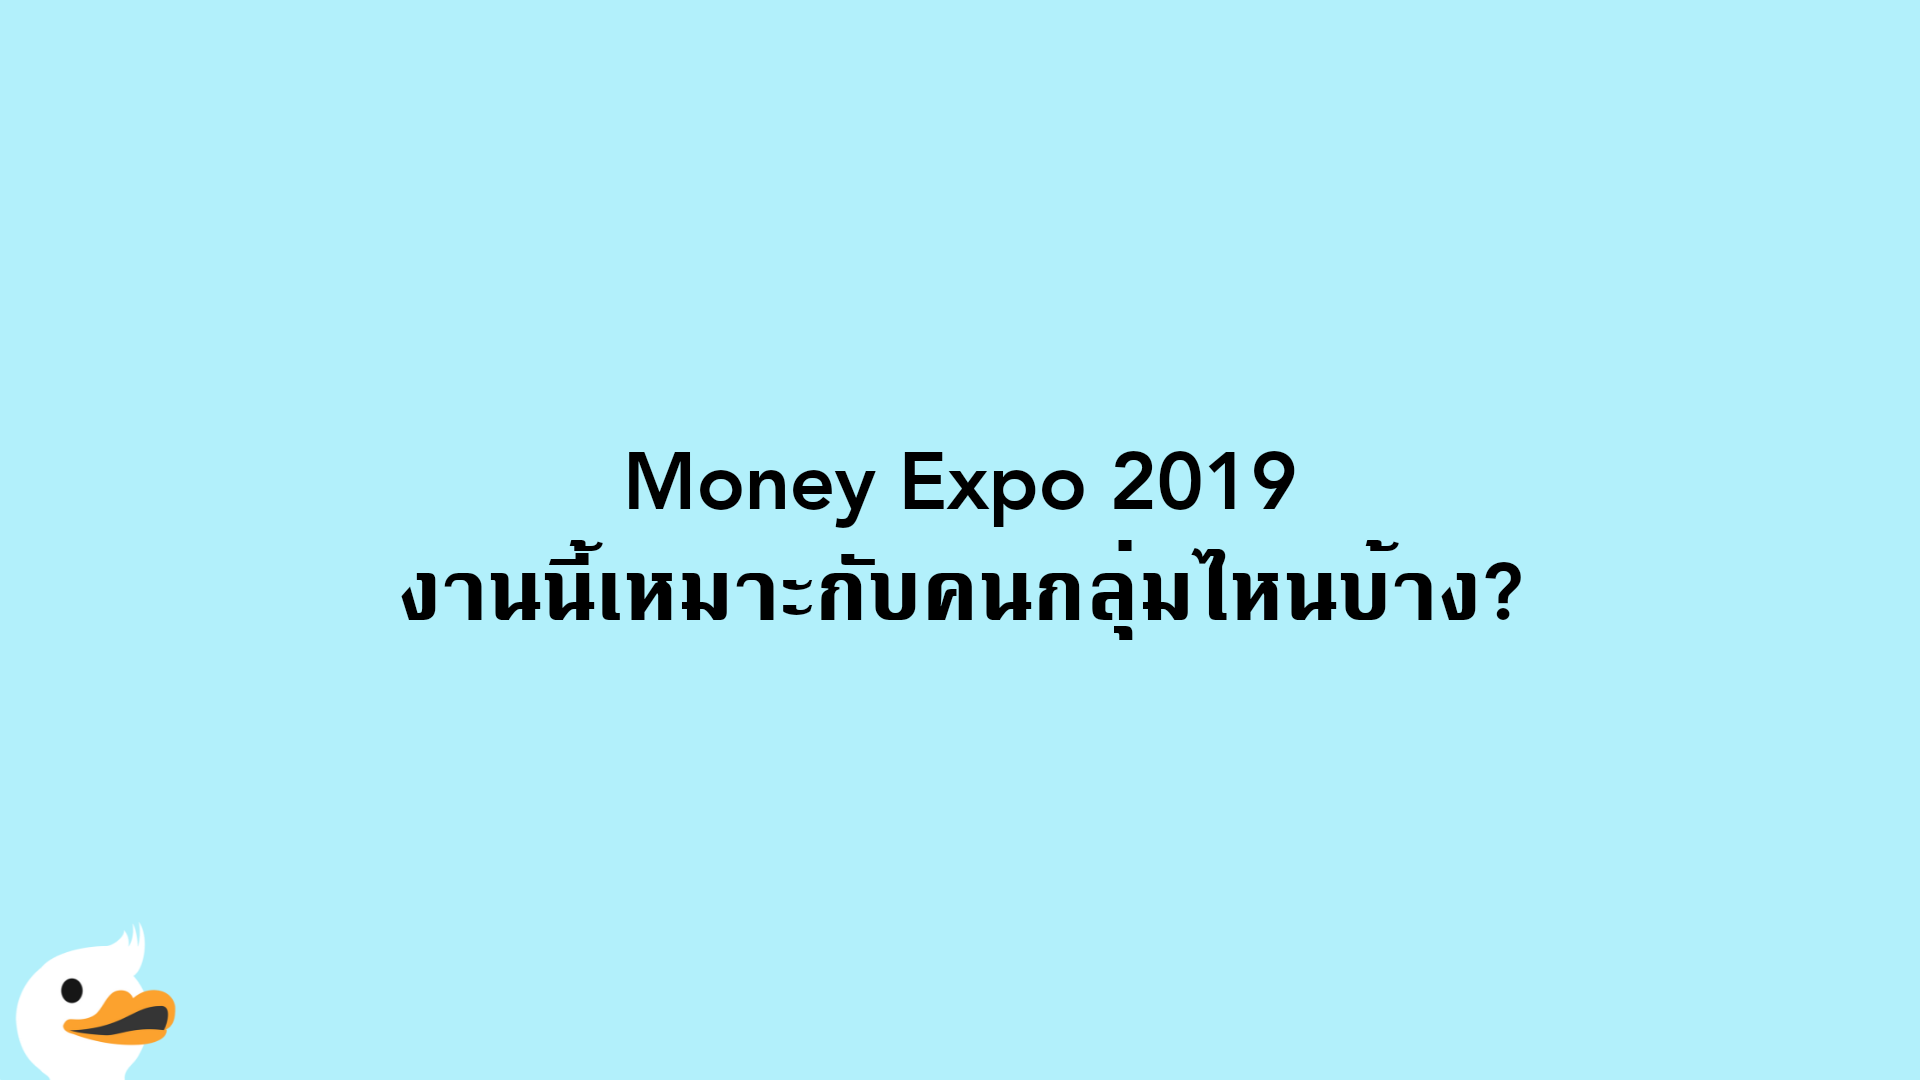 Money Expo 2019 งานนี้เหมาะกับคนกลุ่มไหนบ้าง?